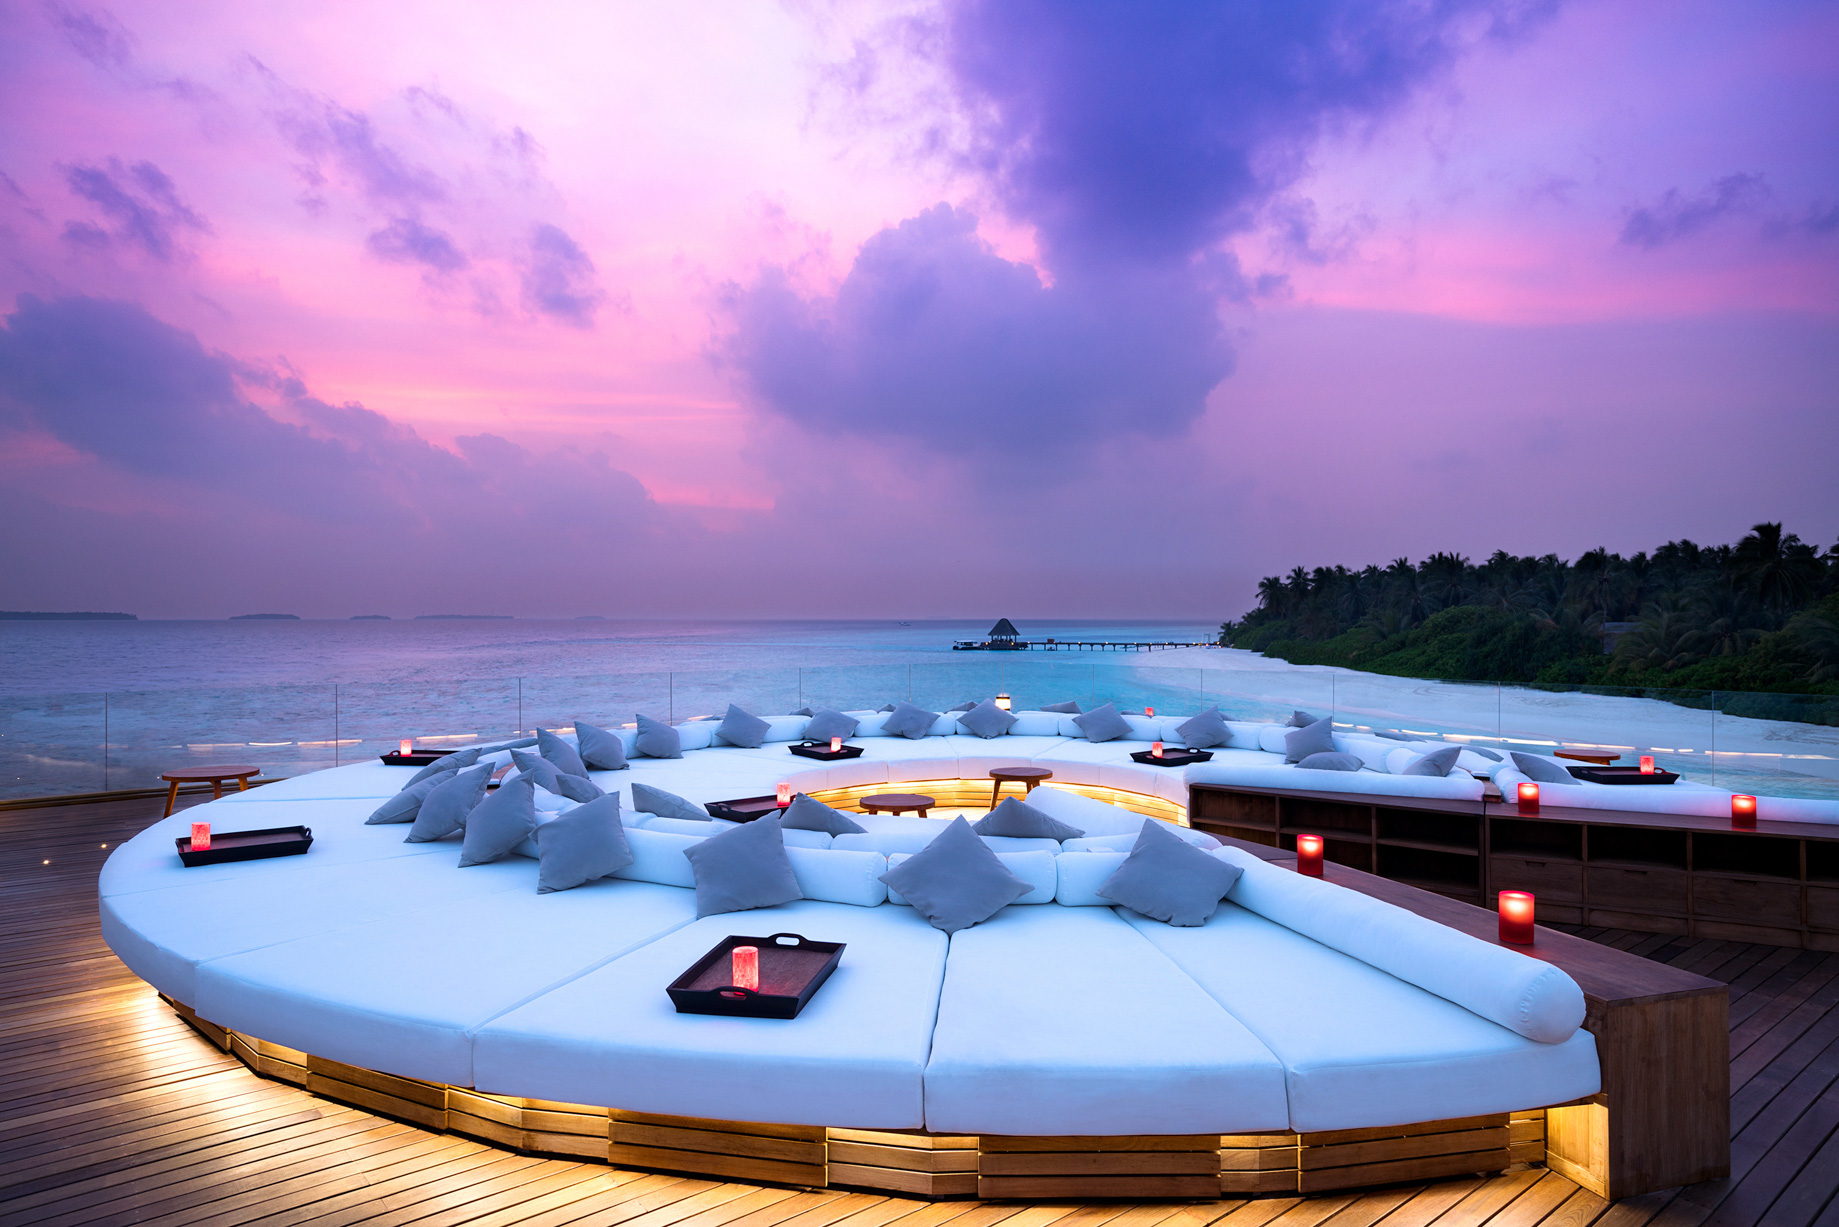 Anantara Kihavah Maldives Villas Resort – Baa Atoll, Maldives – SKY Bar Deck Lounge View Sunset